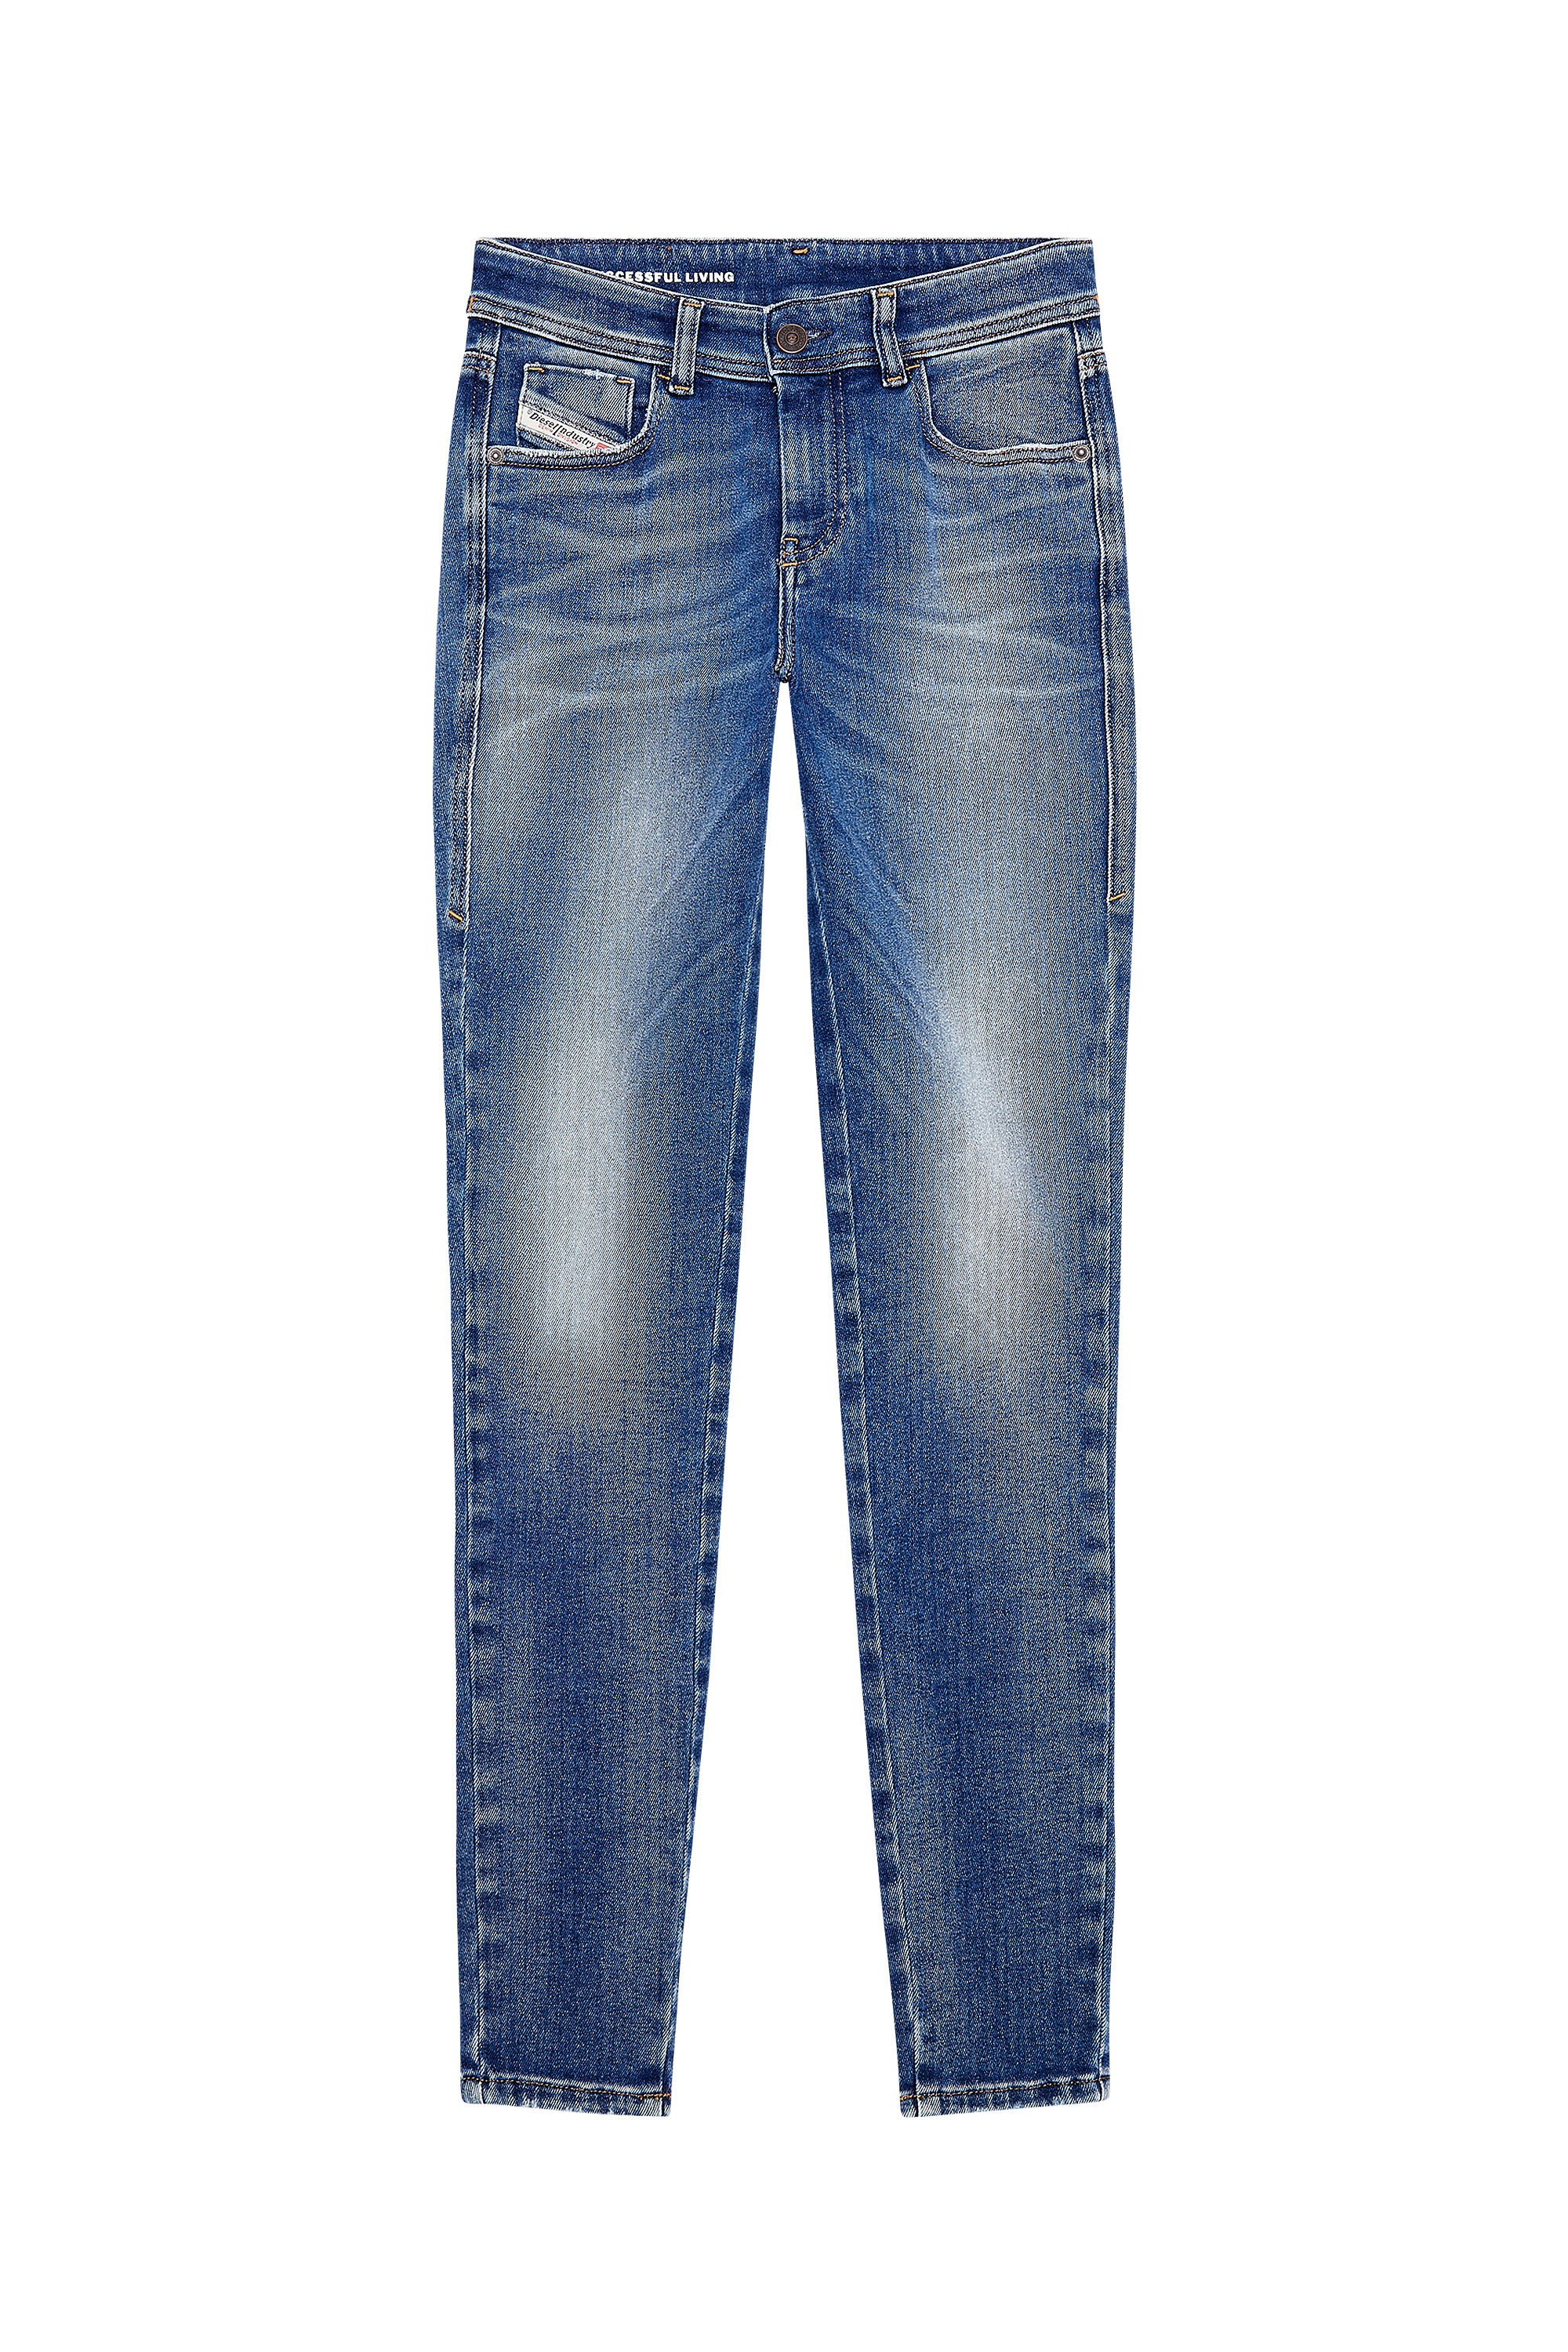 Diesel - Woman Super skinny Jeans 2017 Slandy 09H90, Medium blue - Image 3